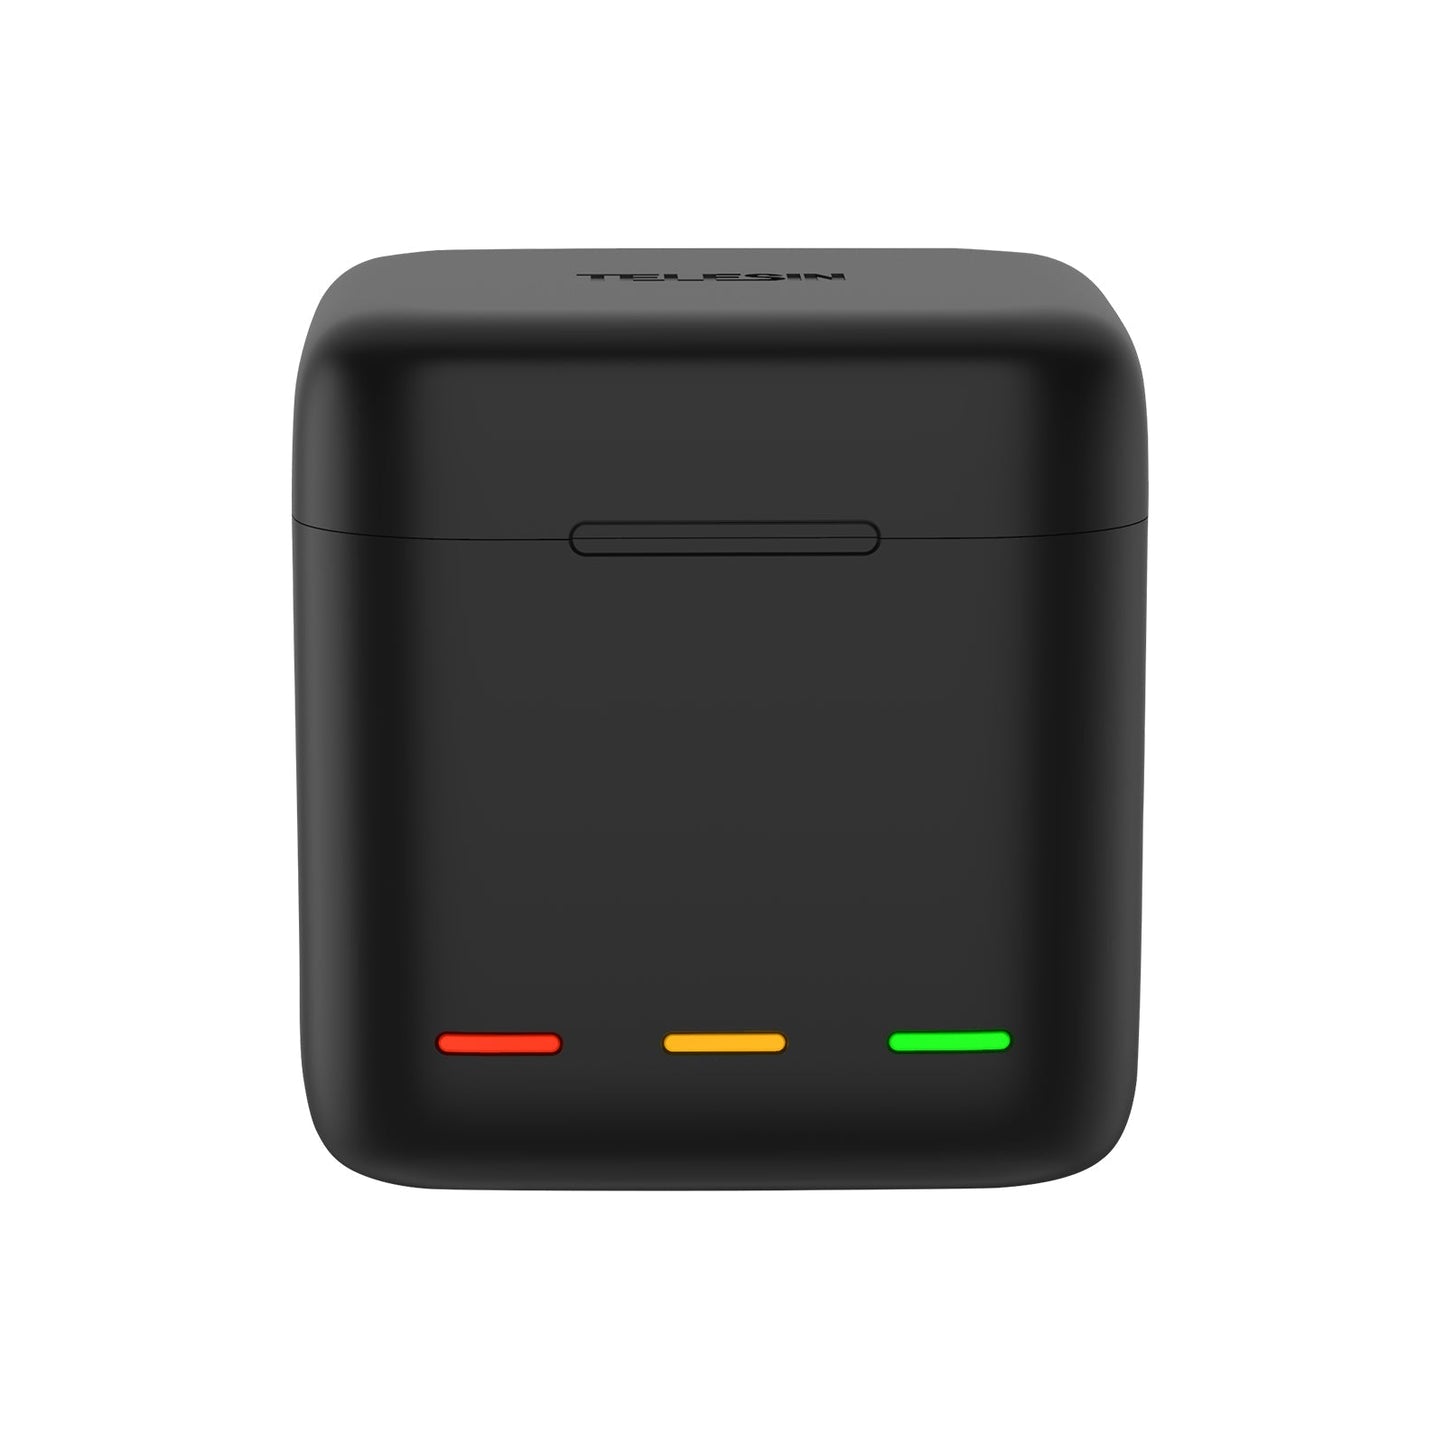 Cargador triple LED Telesin + Batería para GoPro Hero 12 Black – ISO64